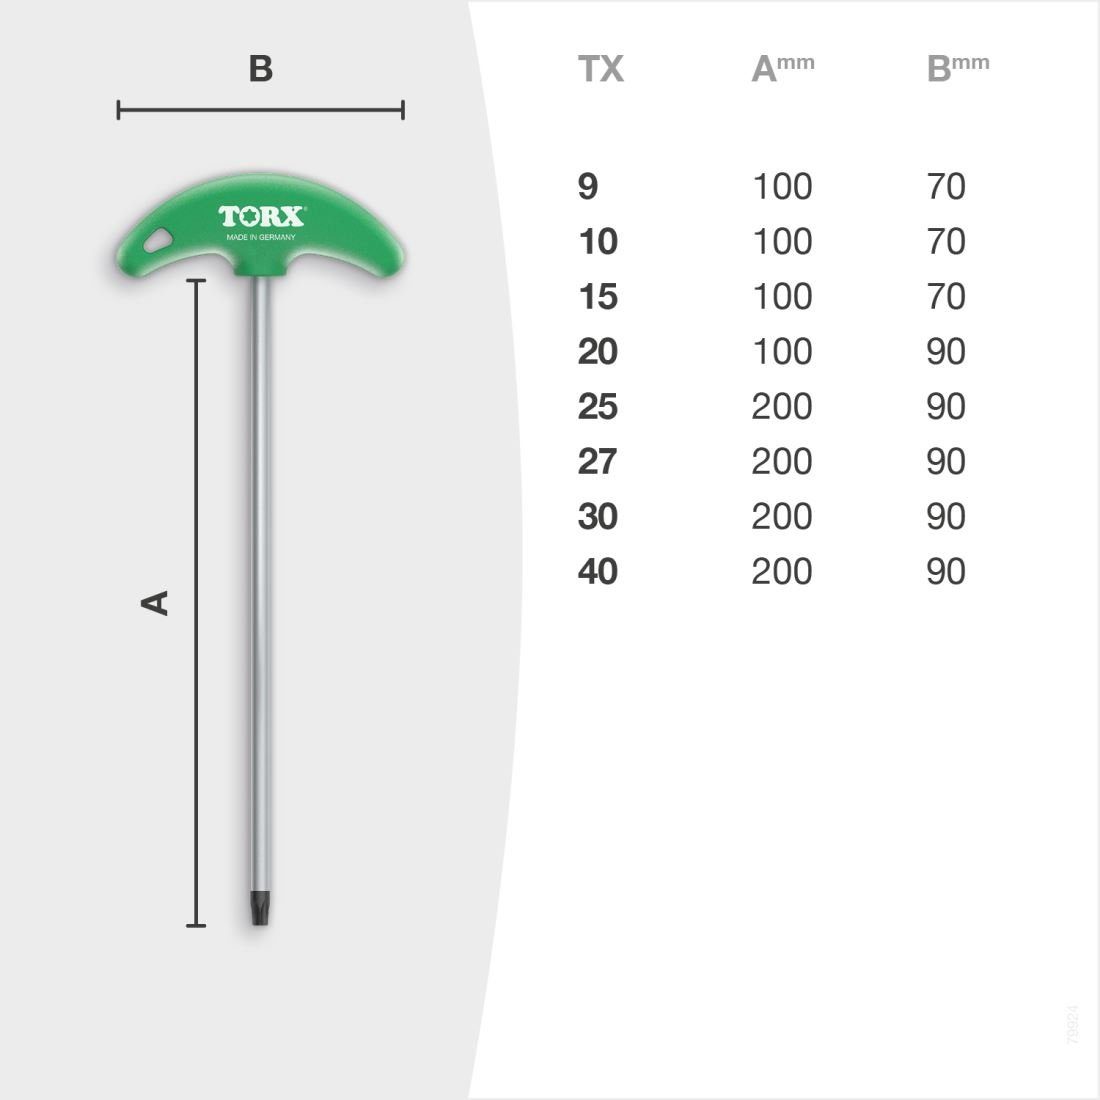 TORX Torxschlüssel T-Griff TX40, 8tlg extra - Set TX9 lang Schraubendreher